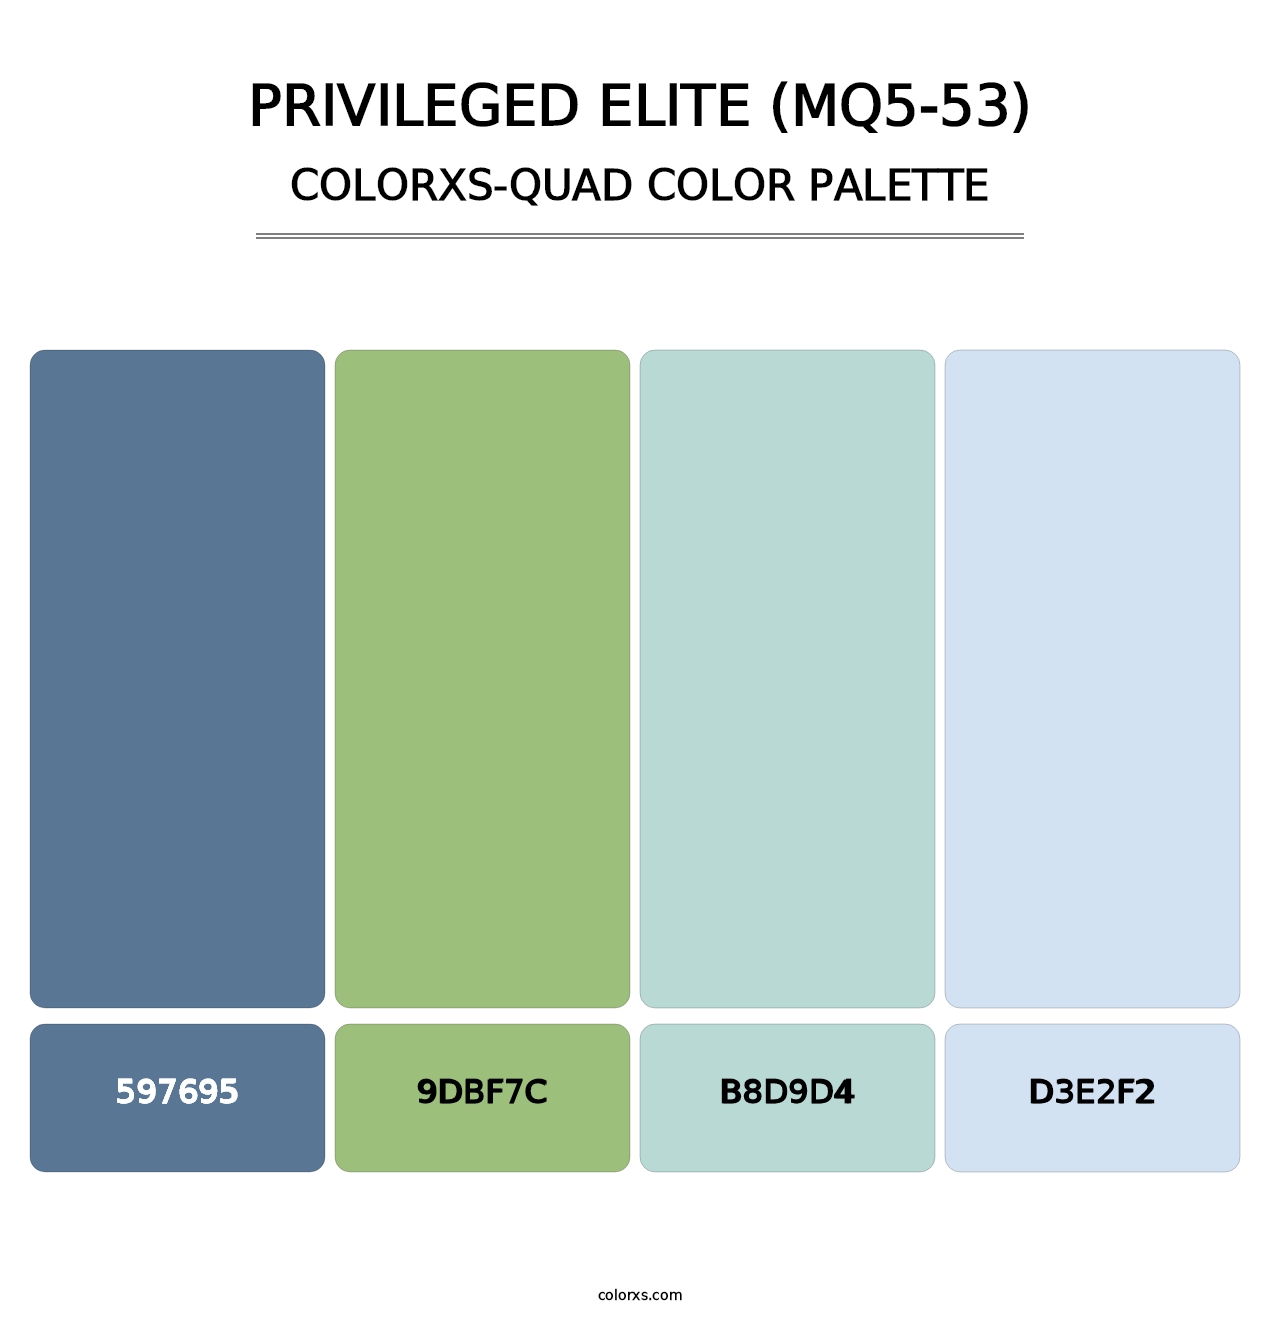 Privileged Elite (MQ5-53) - Colorxs Quad Palette